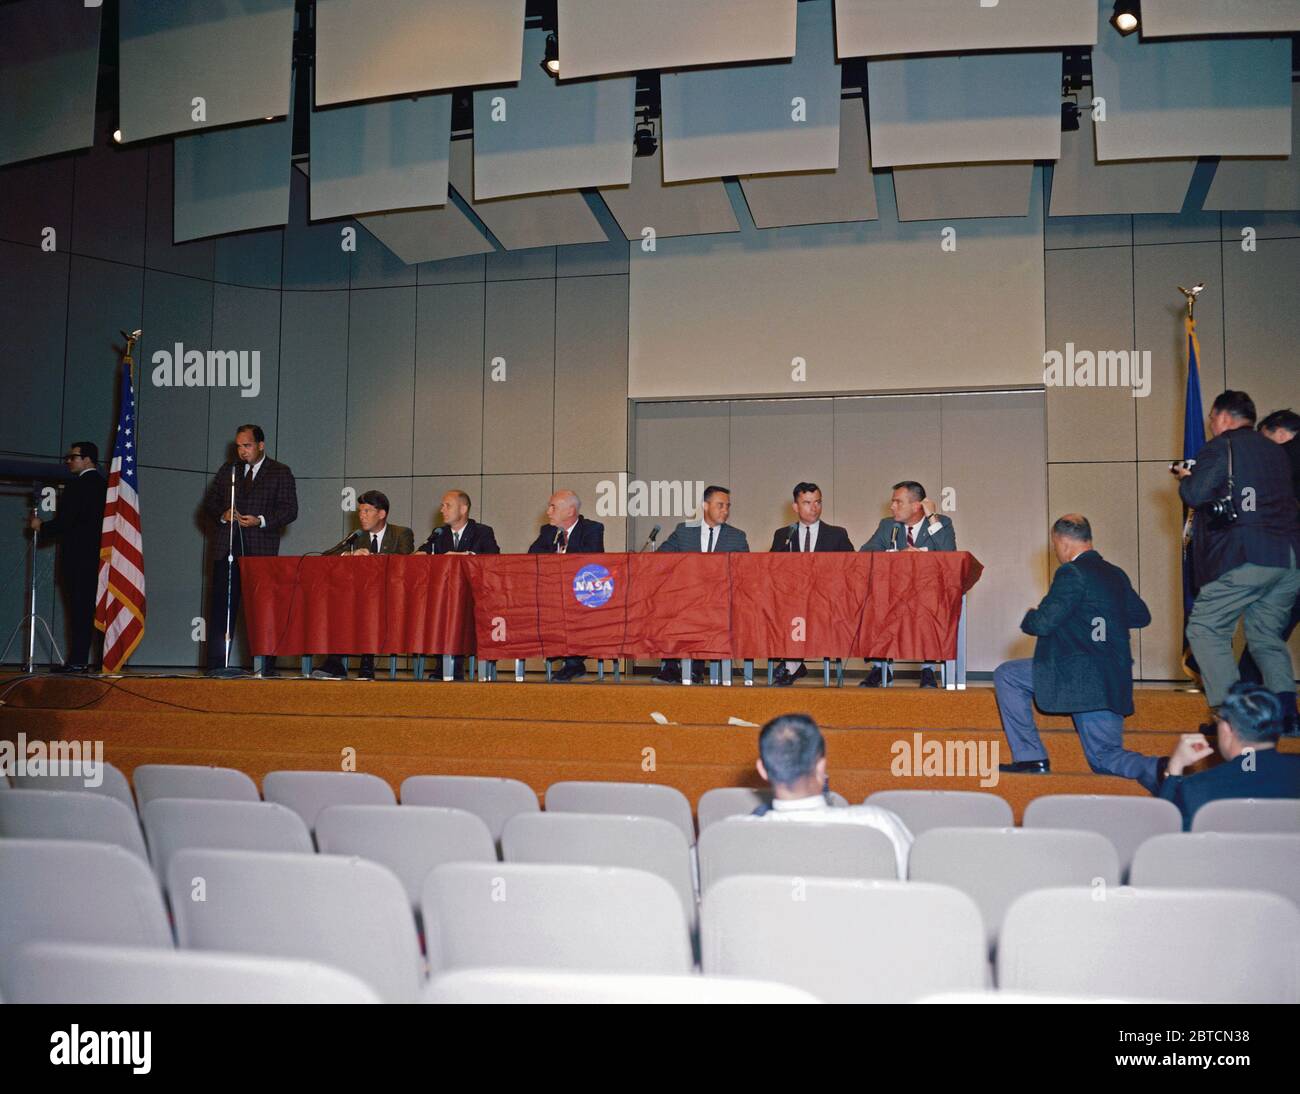 (13 avril 1964) --- Une conférence de presse a eu lieu dans le bâtiment. 1 auditorium au Manned Spacecraft Center de la NASA pour annoncer la première astronaute Gemini sélections. Illustré de gauche à droite, Paul Haney, M.SC. Agente, Affaires publiques (debout) ; les astronautes Walter Schirra et Thomas Stafford ; Dr Robert Gilruth, directeur du MSC ; les astronautes Virgil Grissom et John Young ; et Donald K. Slayton, directeur adjoint des Opérations à l'équipage de MSC. Banque D'Images